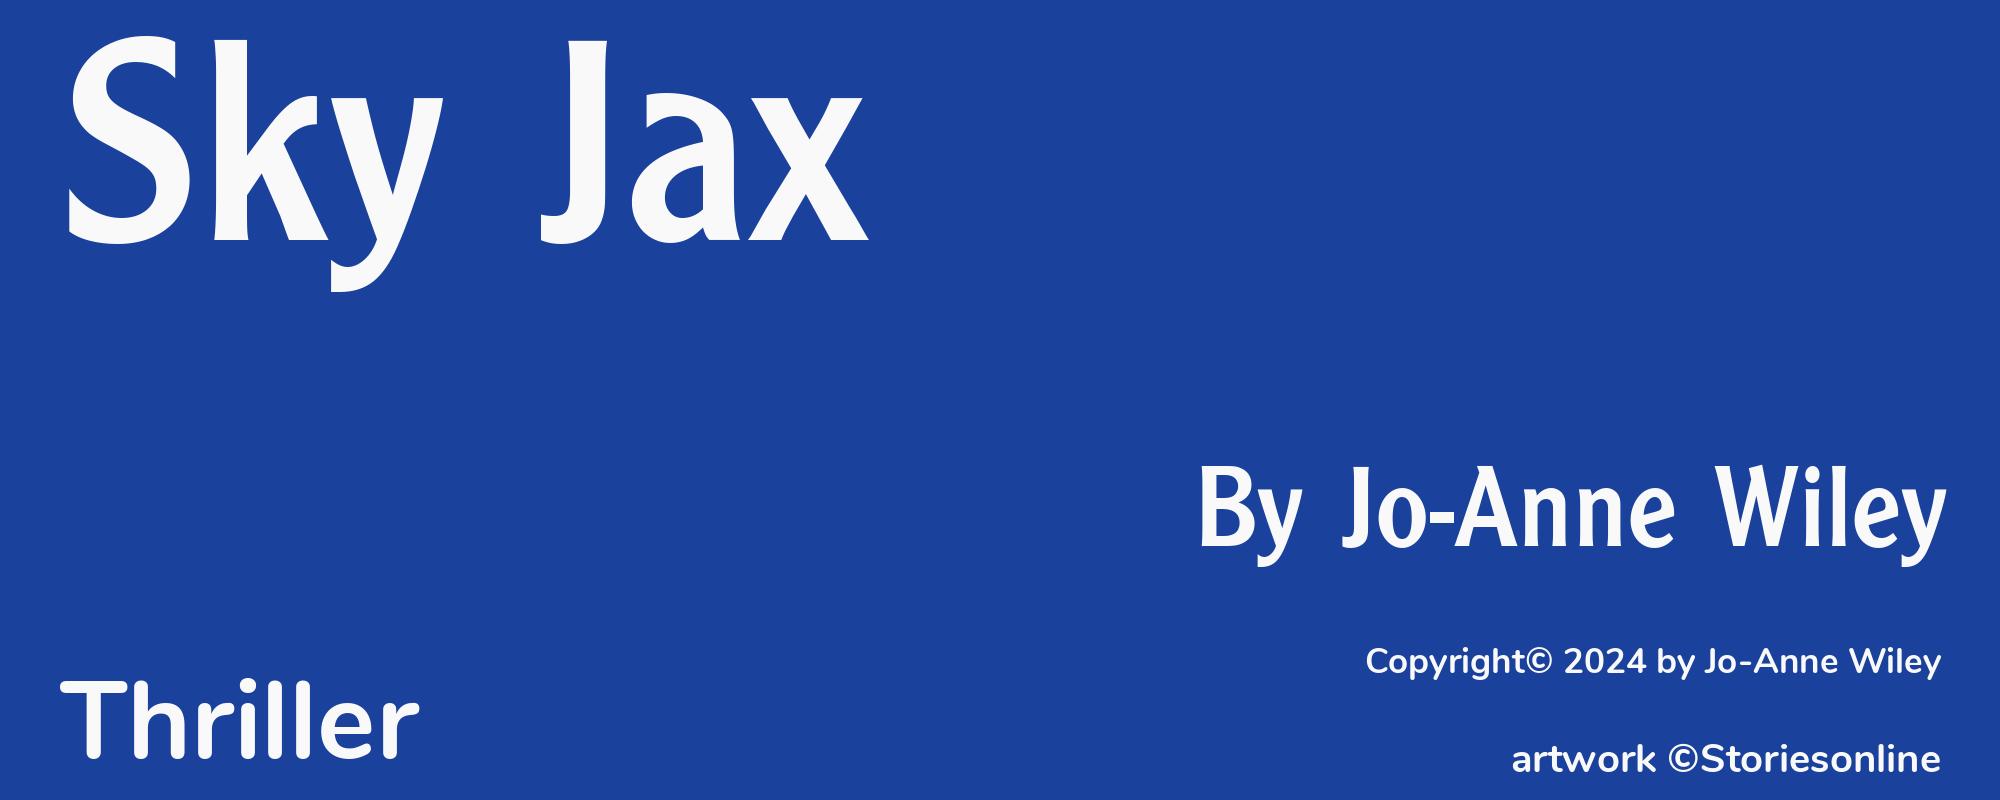 Sky Jax - Cover